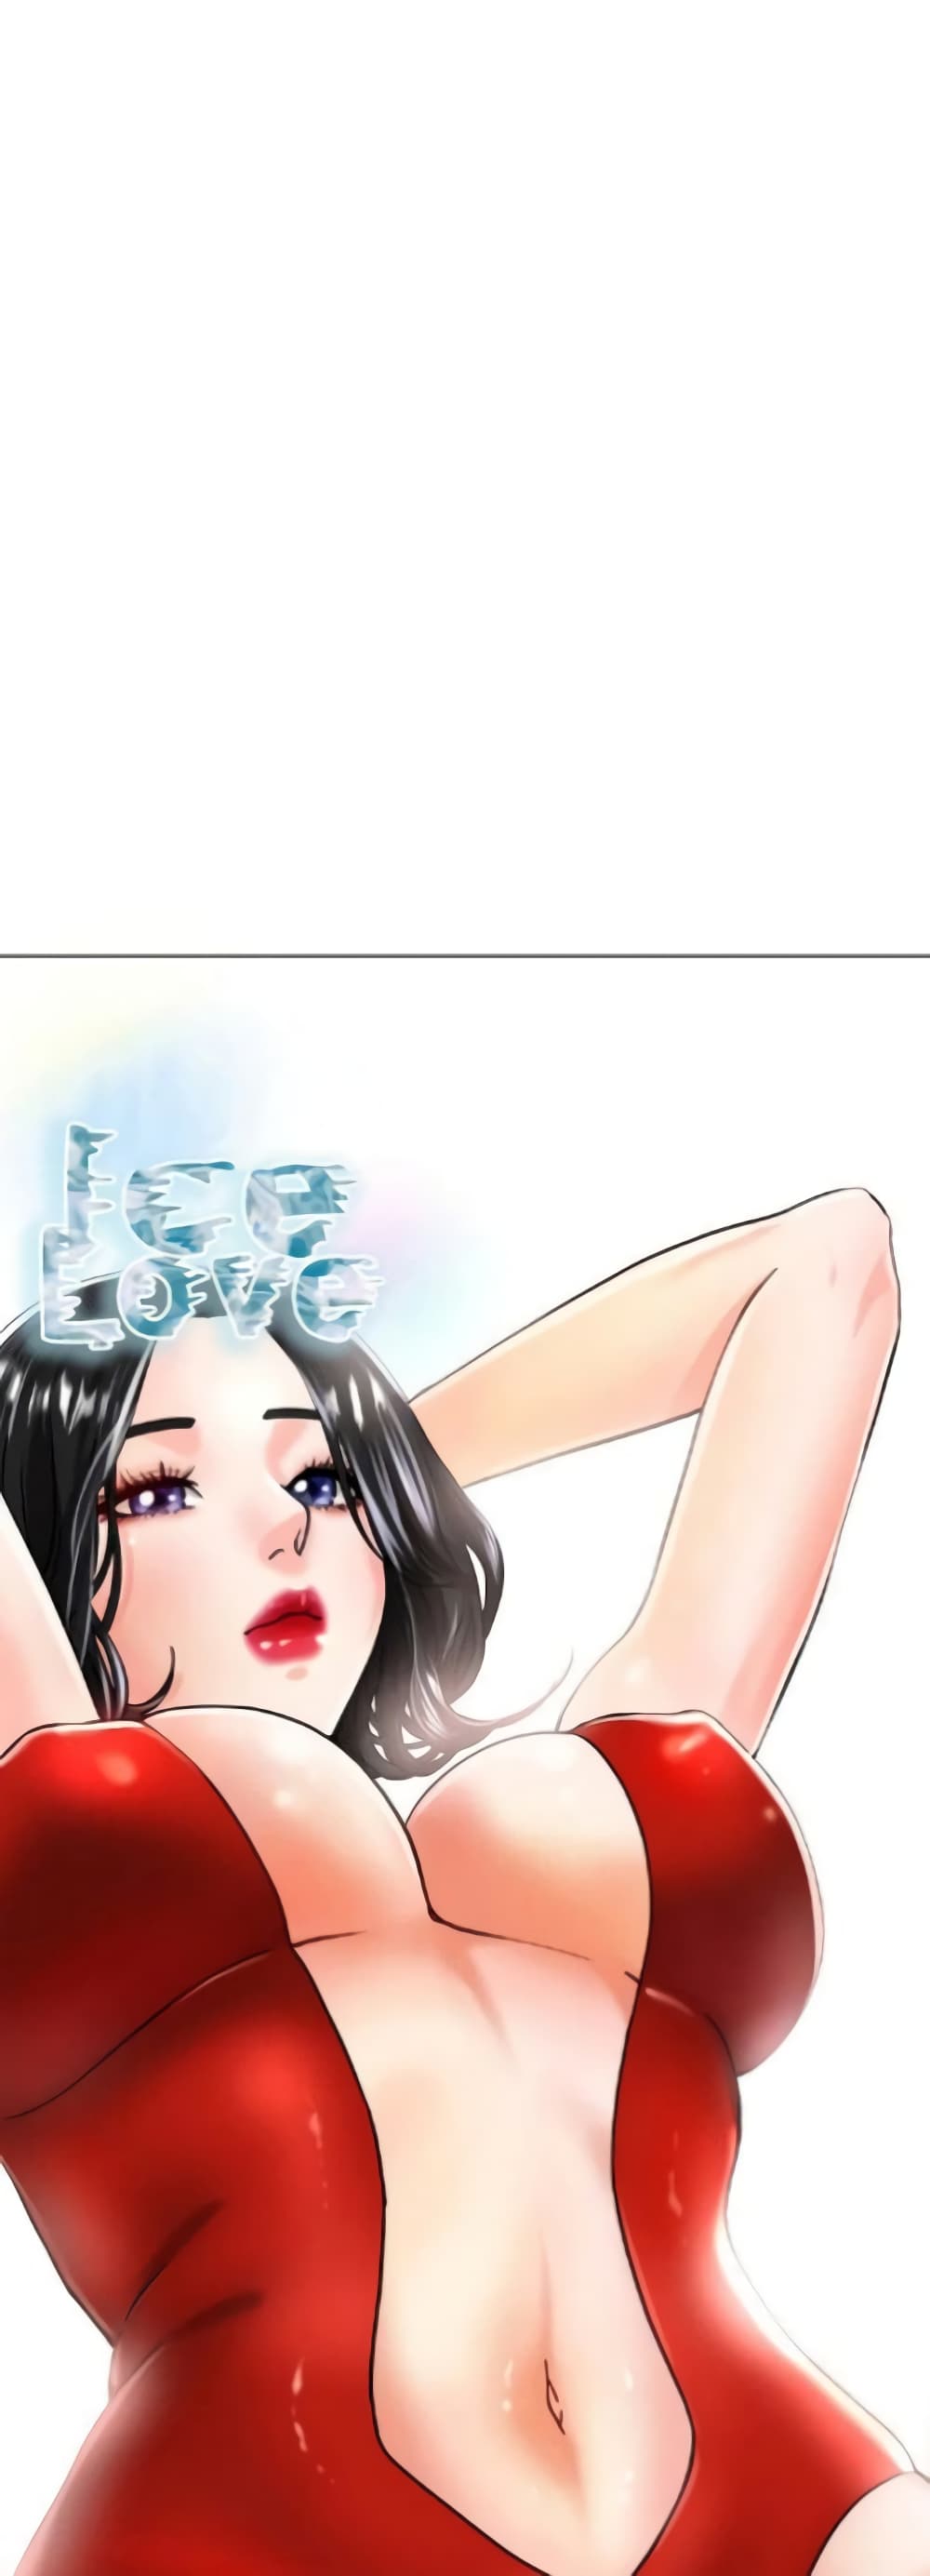 Ice Love 19-19